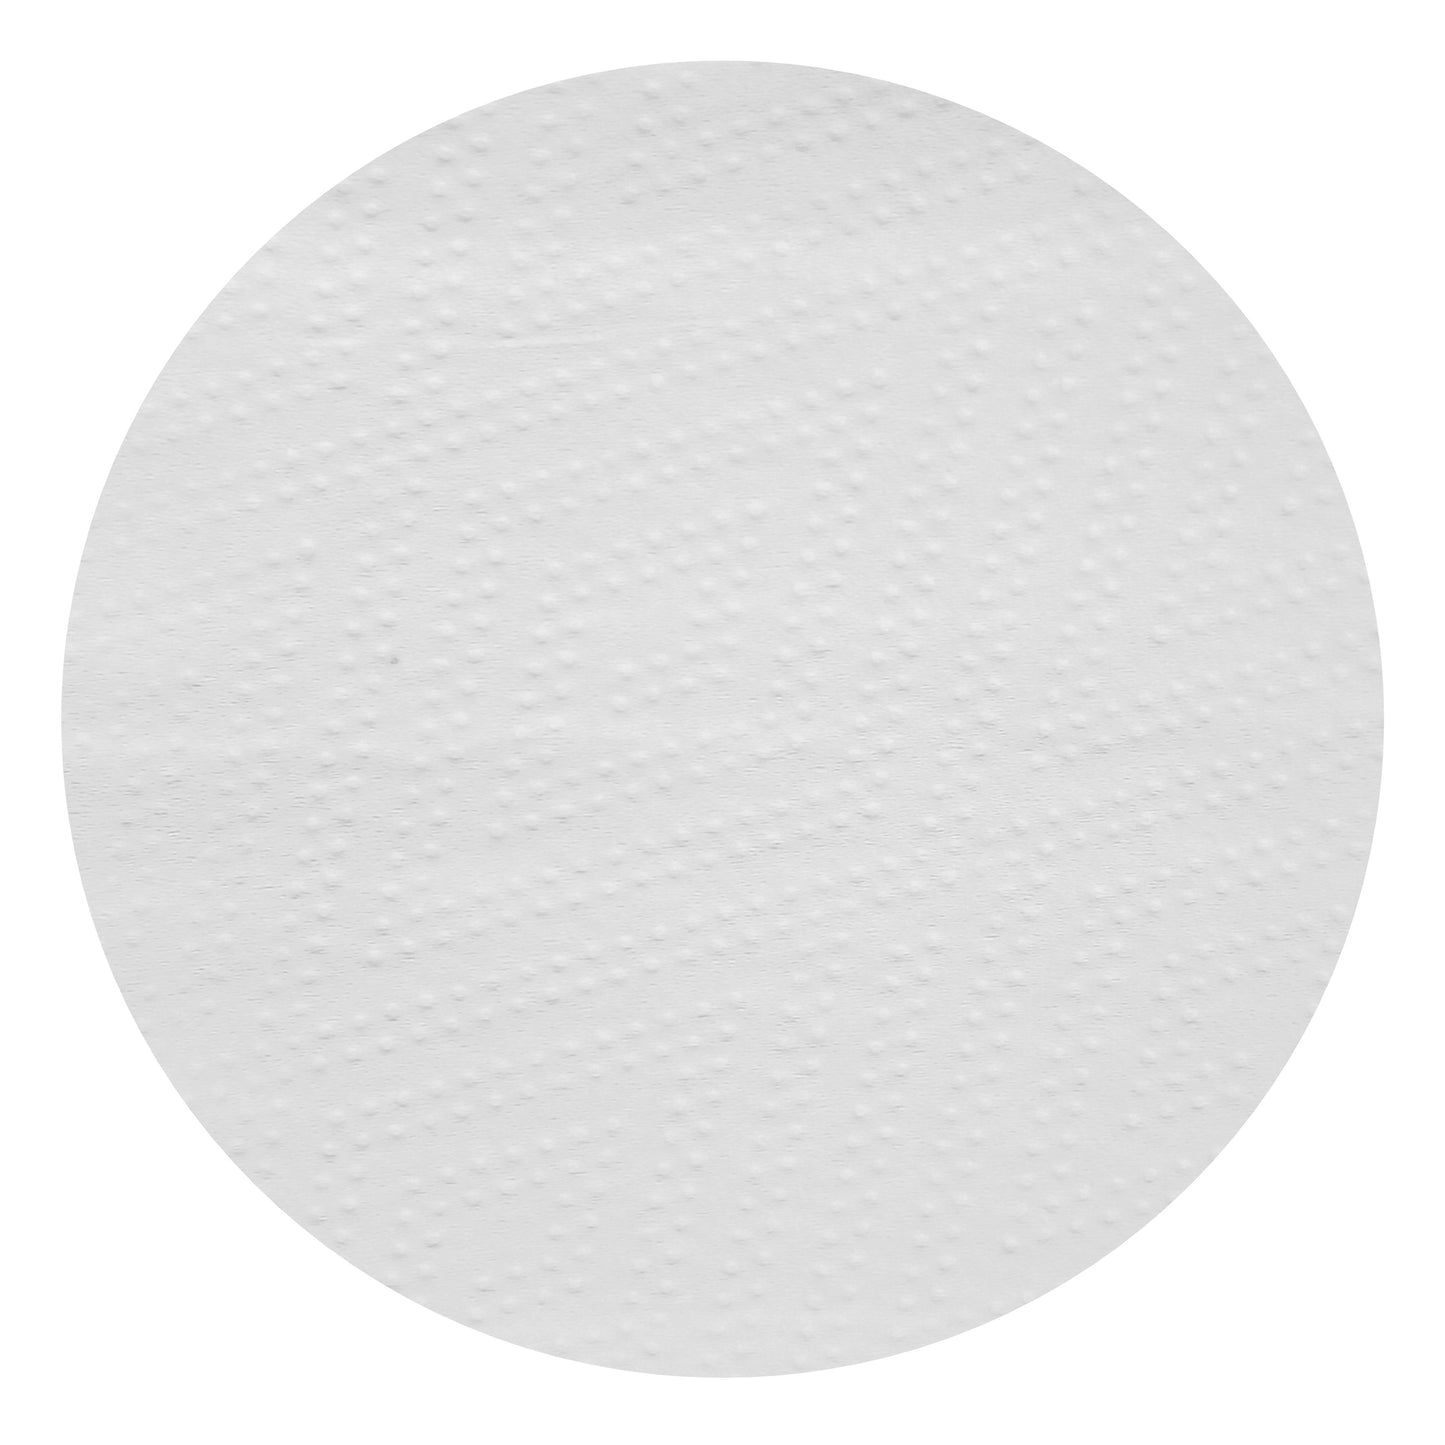 BROD Papierhandtücher 90513 Premium, W-Falz, 3-lagig, 32 x 21 cm, weiß 2500 Blatt